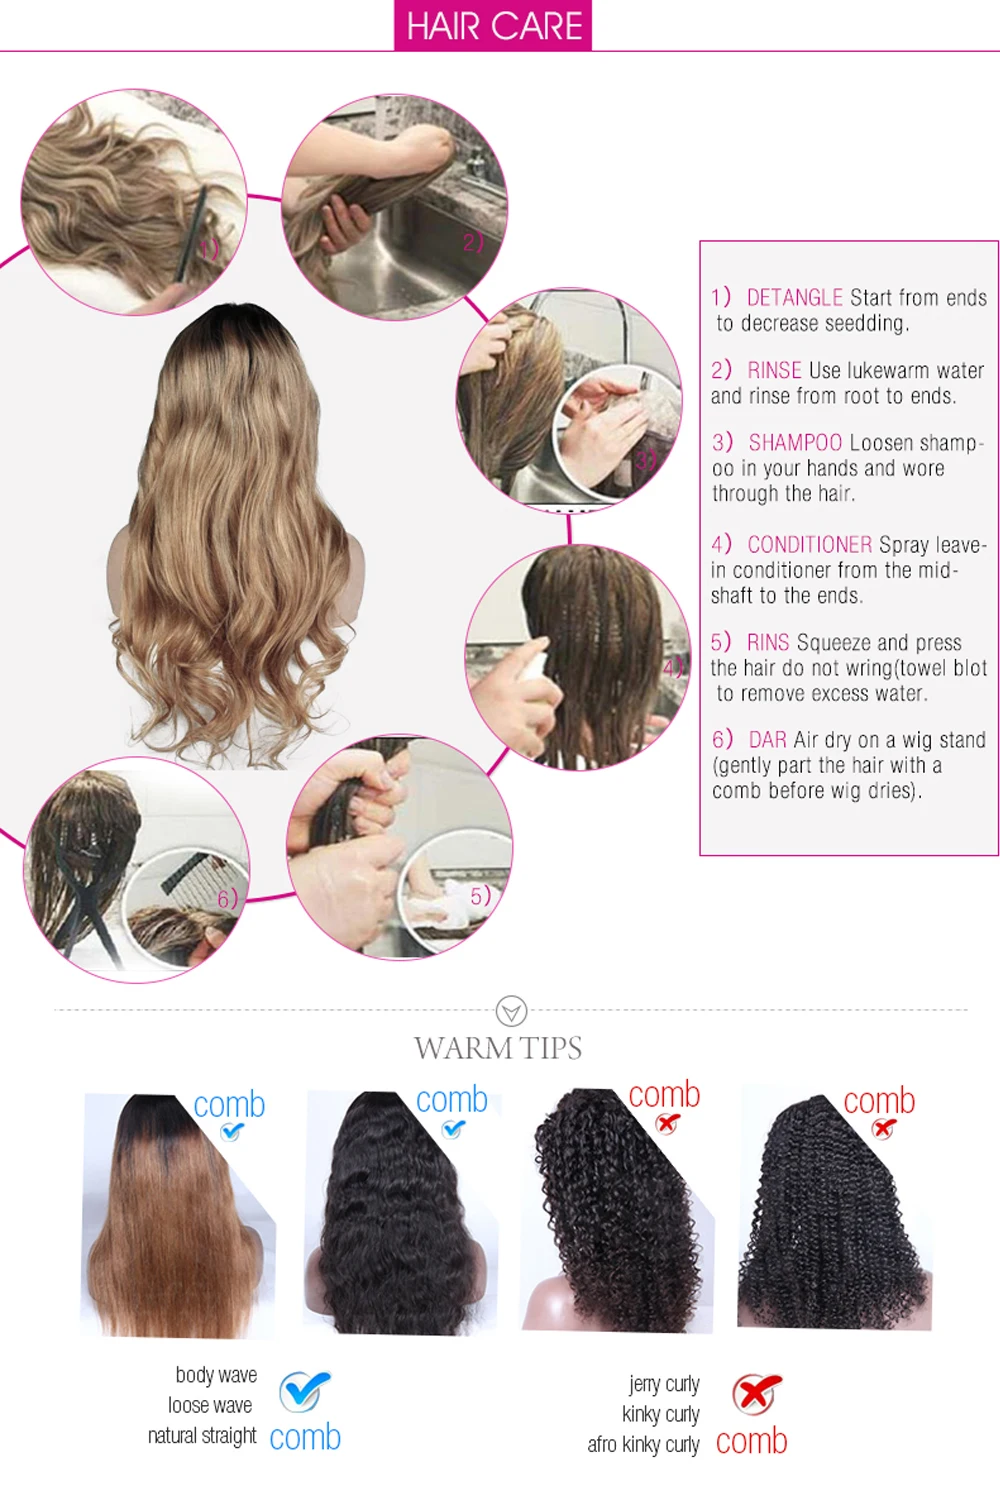 Imeya# 1B цвет Синтетический Плетеный синтетические волосы на кружеве парики для женщин термостойкие волокна с волосами младенца кудрявый конец